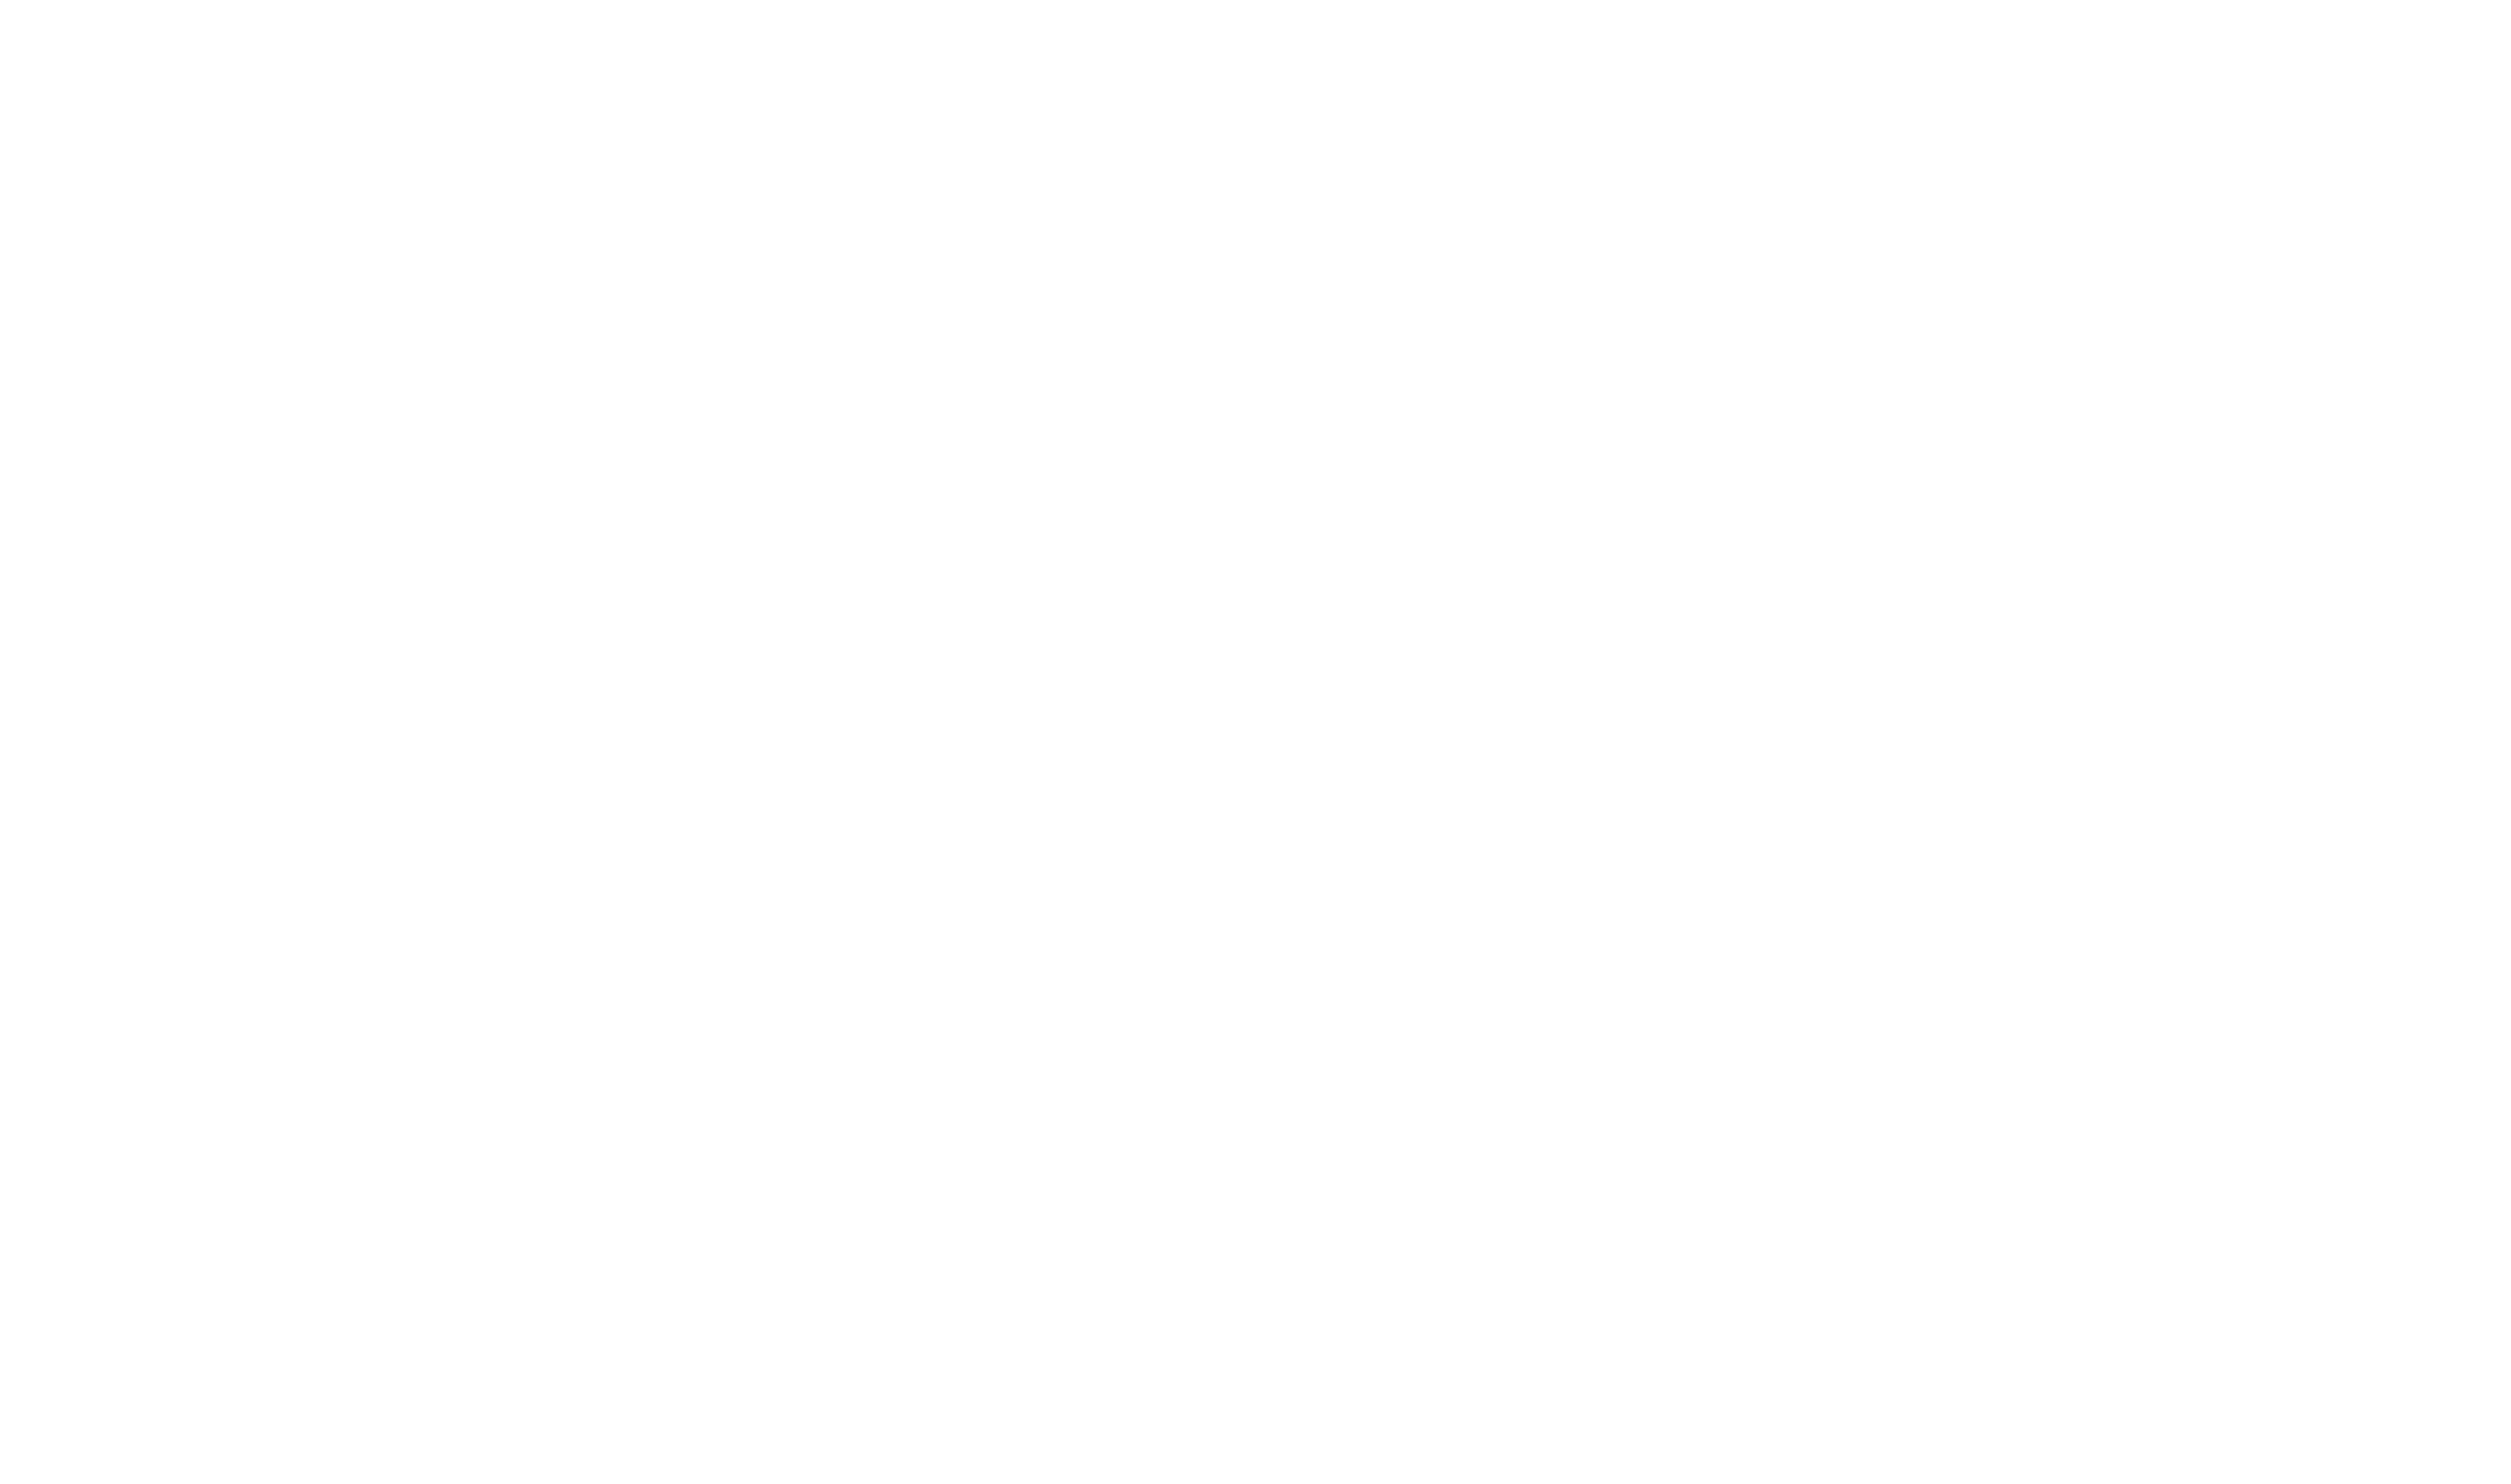 SZ PARALEGAL SERVICES